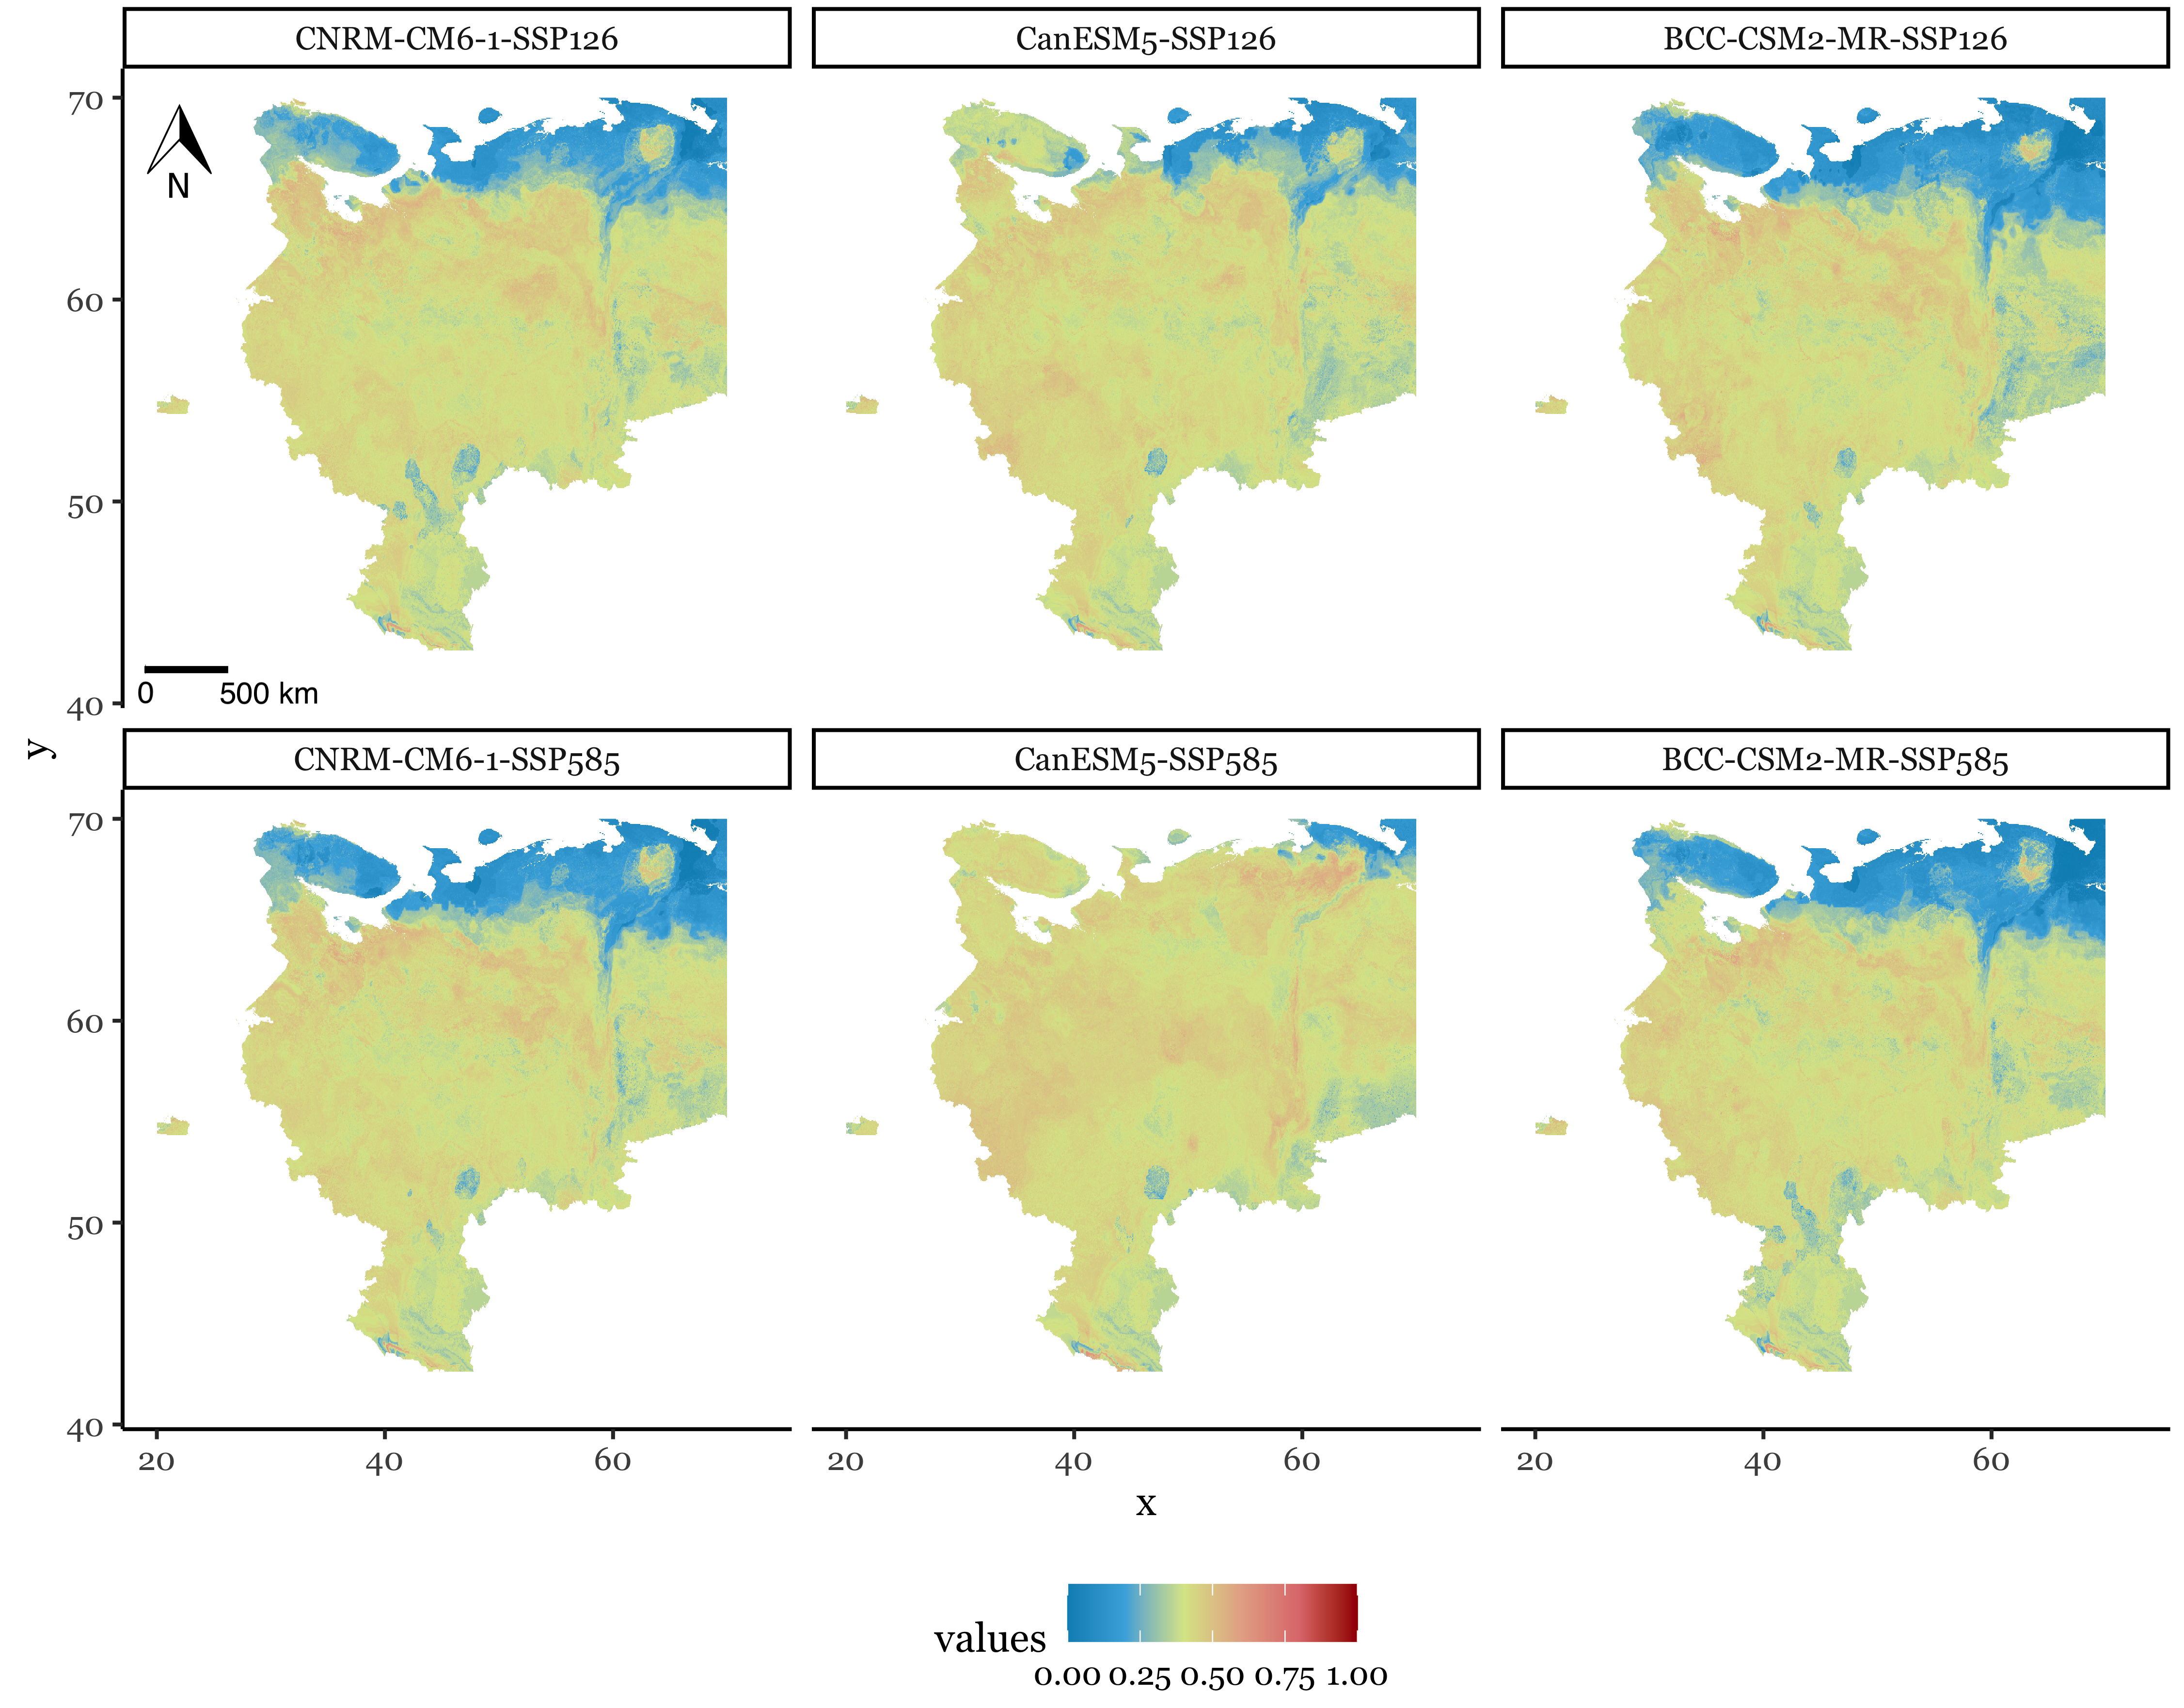 Прогноз пригодности территорий России для борщевика на 2040–2060 годы. Различия в картах (прогнозах) объясняются различными климатическими сценариями. При оптимистичном предполагается снижение выбросов CO2 и переход к углеродной нейтральности, при пессимистичном — рост выбросов CO2 и существенное глобальное изменение климата, заметное в том числе на территории европейской части России. Результаты исследования дают похожие ареалы распространения борщевика для обоих сценариев, а в канадской модели пессимистичный сценарий предполагает более значительное распространение борщевика, чем оптимистичный